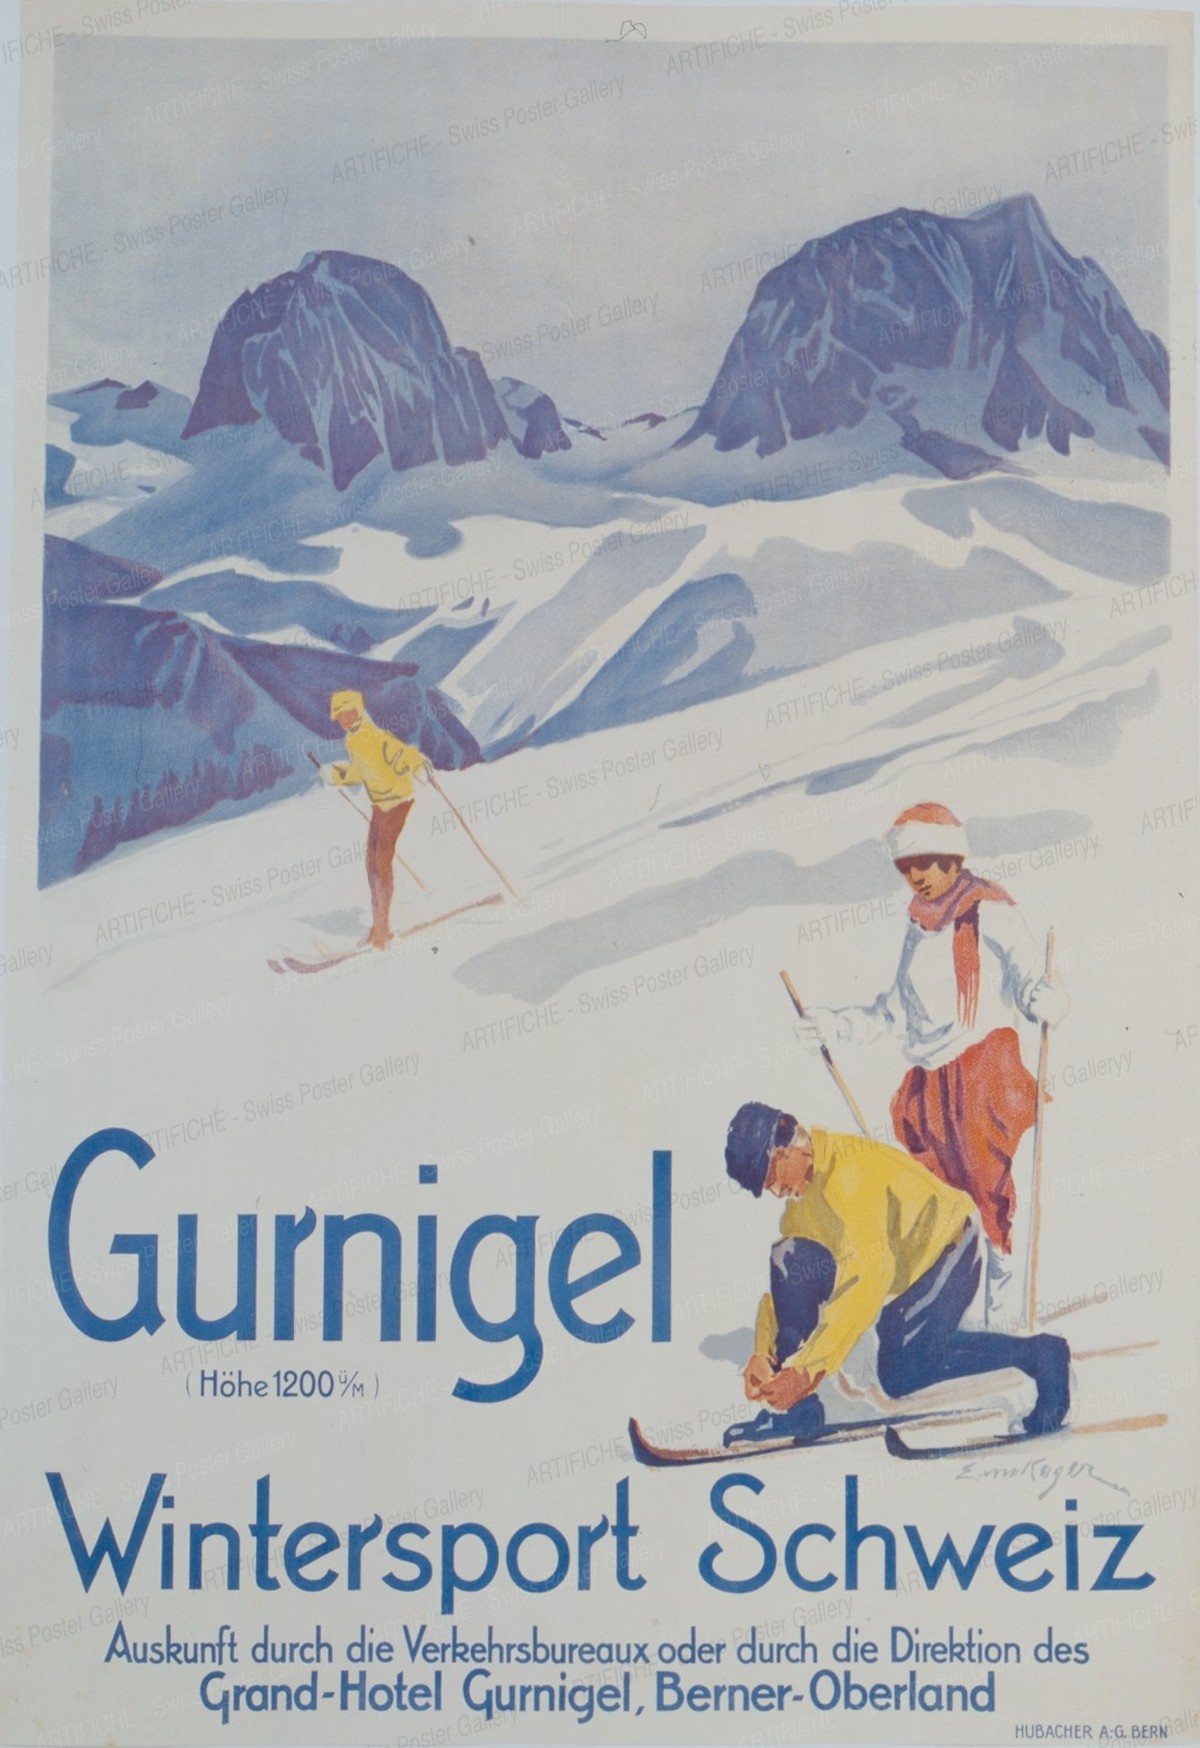 Gurnigel – Wintersport Schweiz – Grand-Hotel Gurnigel, Berner Oberland – 1200 m.ü.M., Erica von Kager